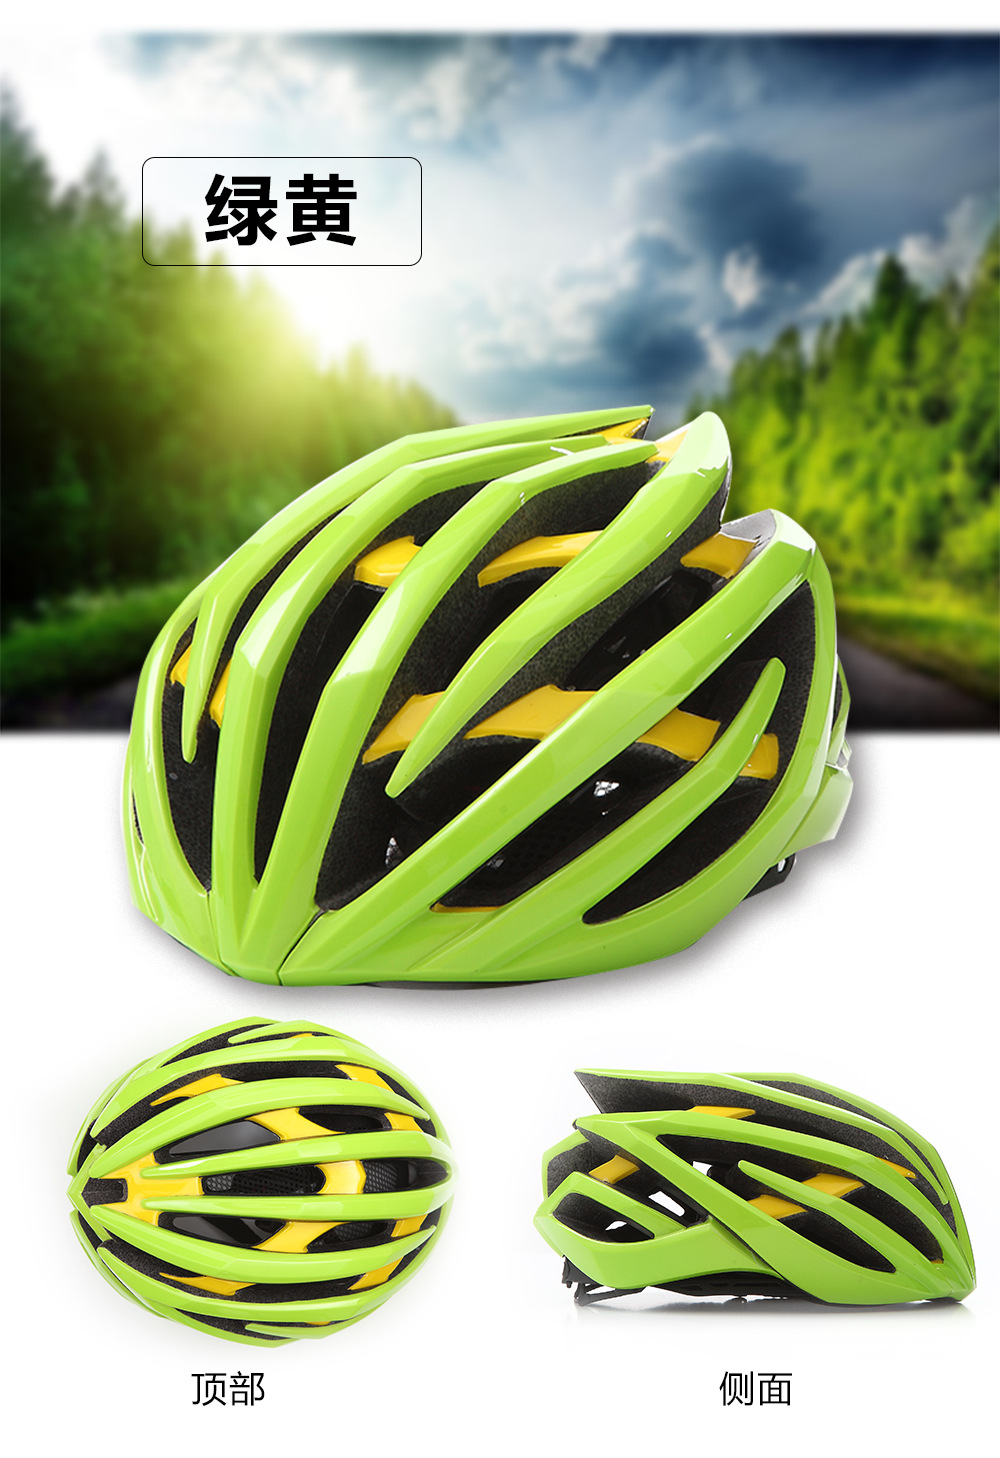 自行车头盔 一体成型头盔 安全头盔 滑轮头盔公路头盔骑行头盔示例图4